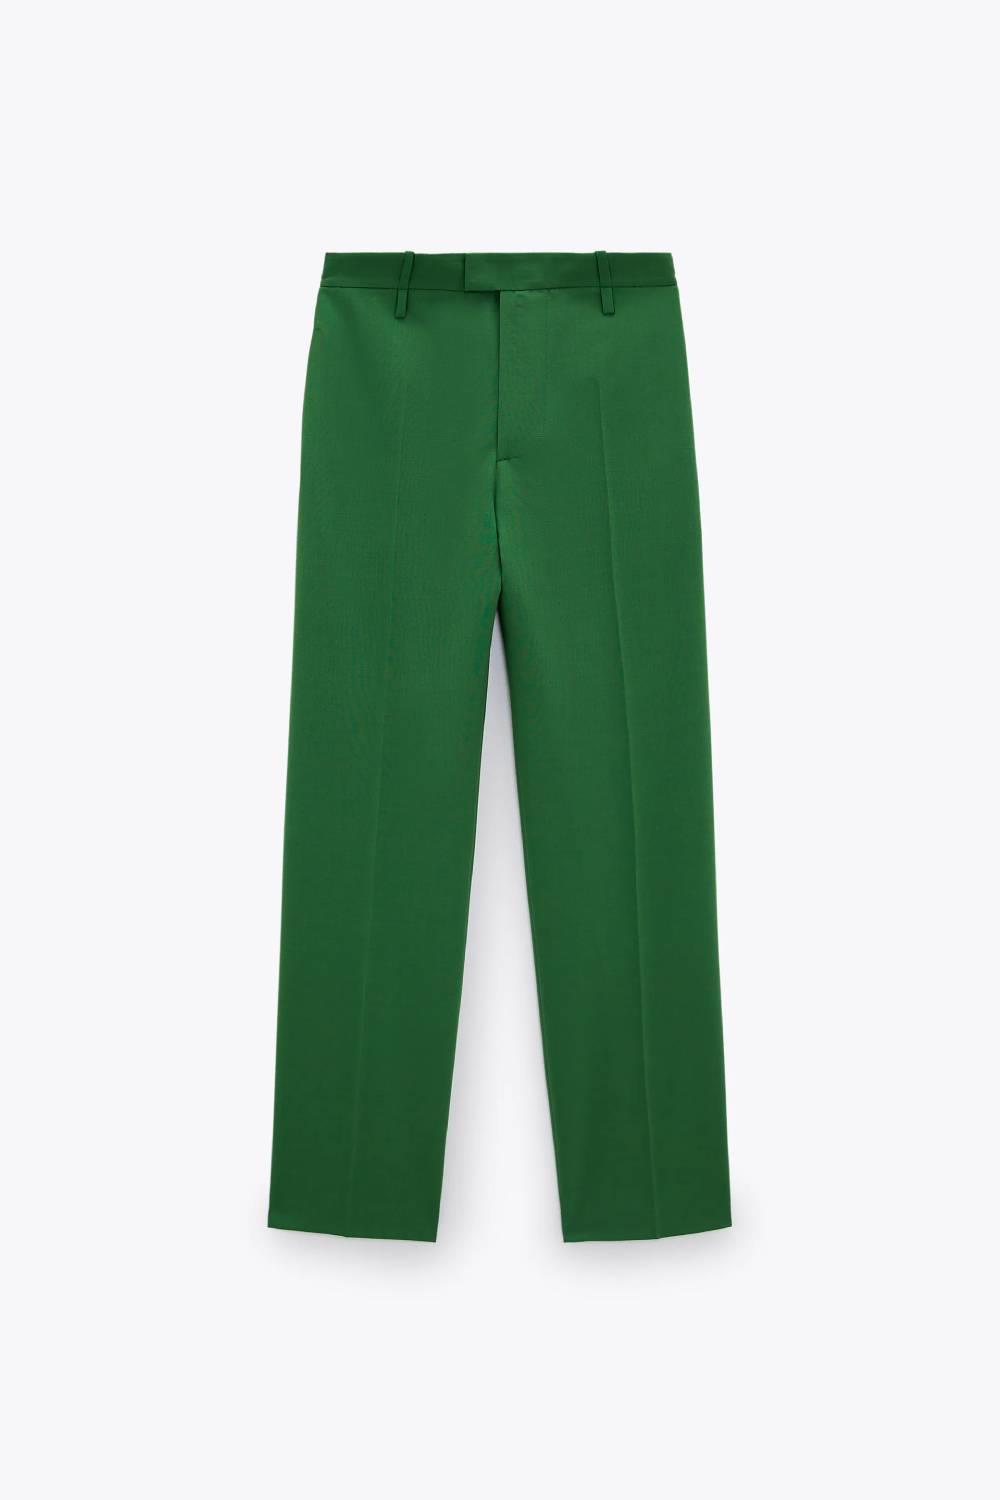 Pantalón verde de corte recto, Zara